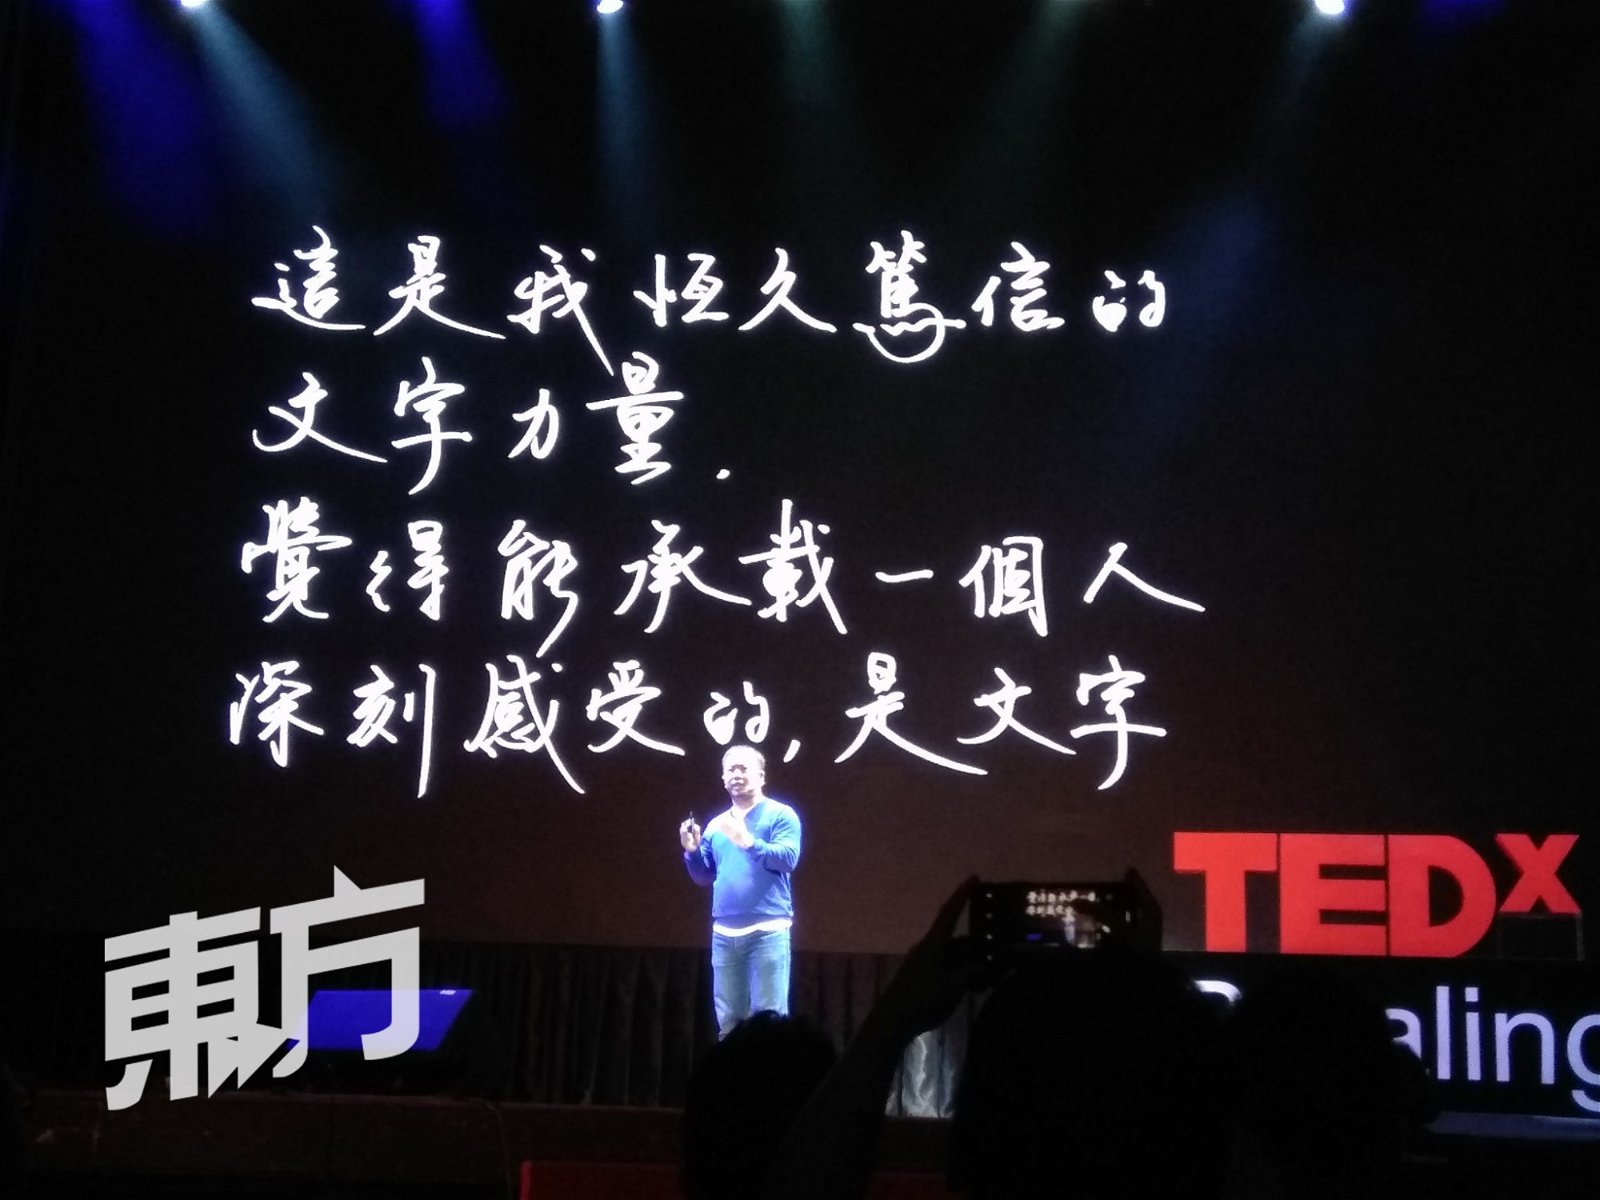 在今年的TEDx茨厂街的年会，主办方邀请陈劭康为主讲人修改演说PPT，给观众带来更优质的观感体验。